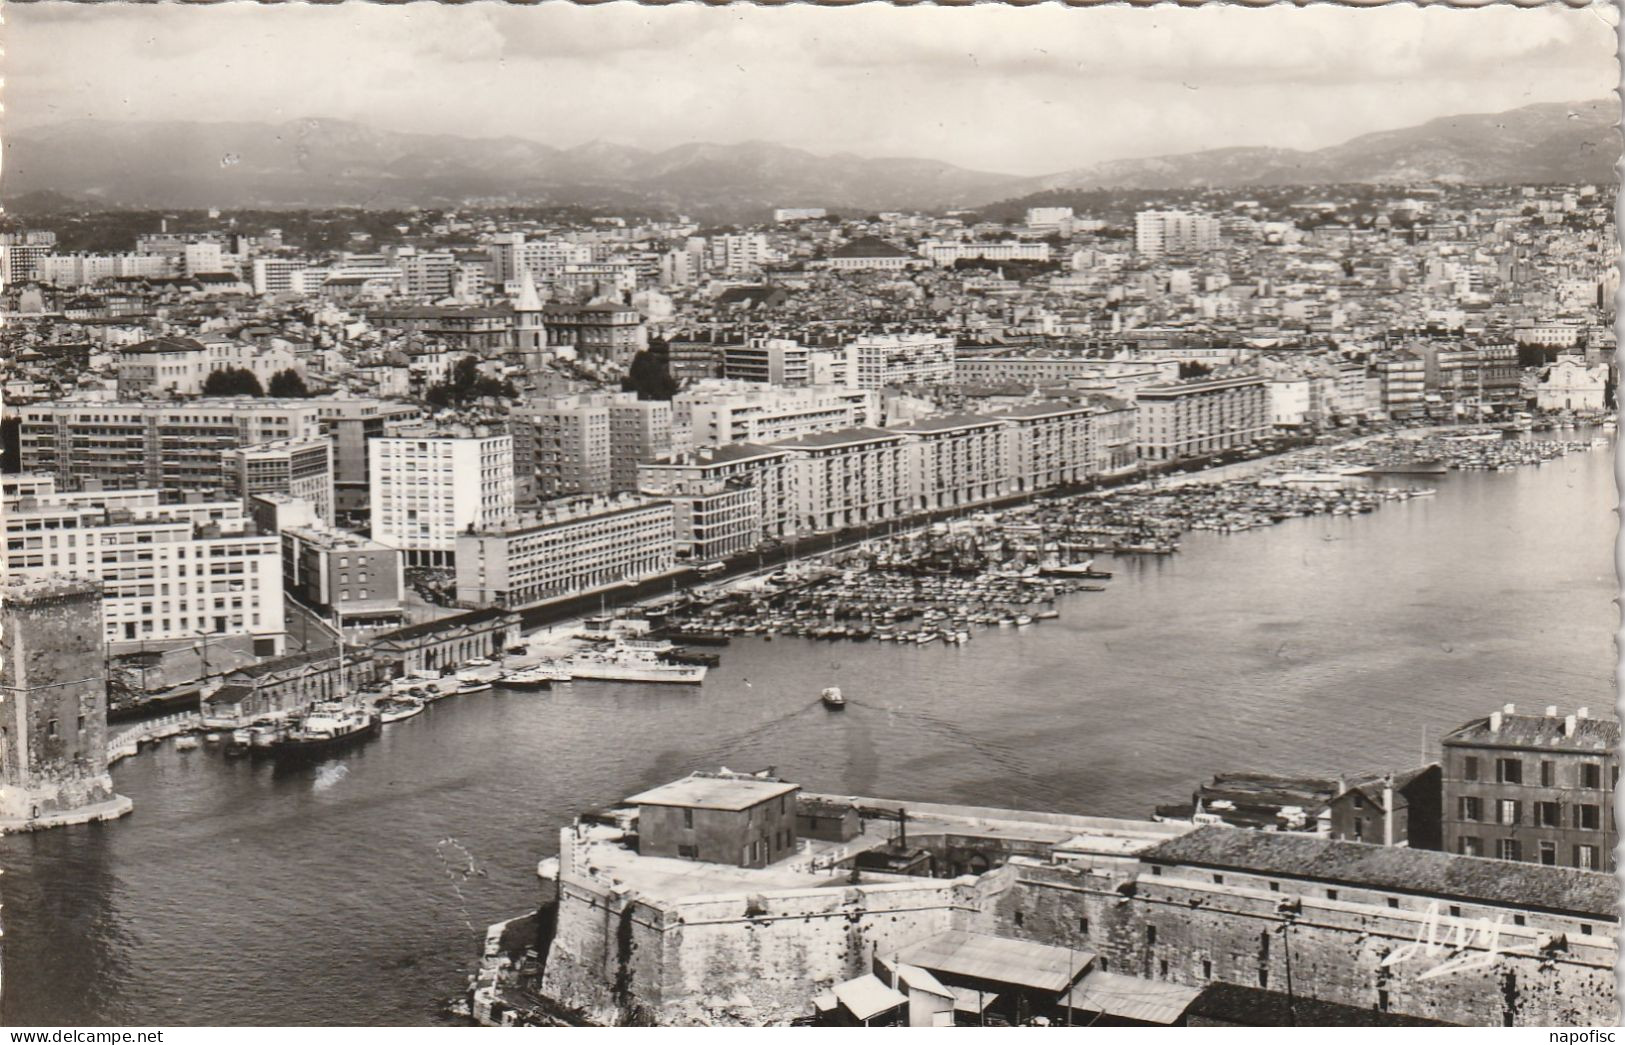 13-Marseille Vue Aérienne Sur Le Port Et La Ville - Alter Hafen (Vieux Port), Saint-Victor, Le Panier